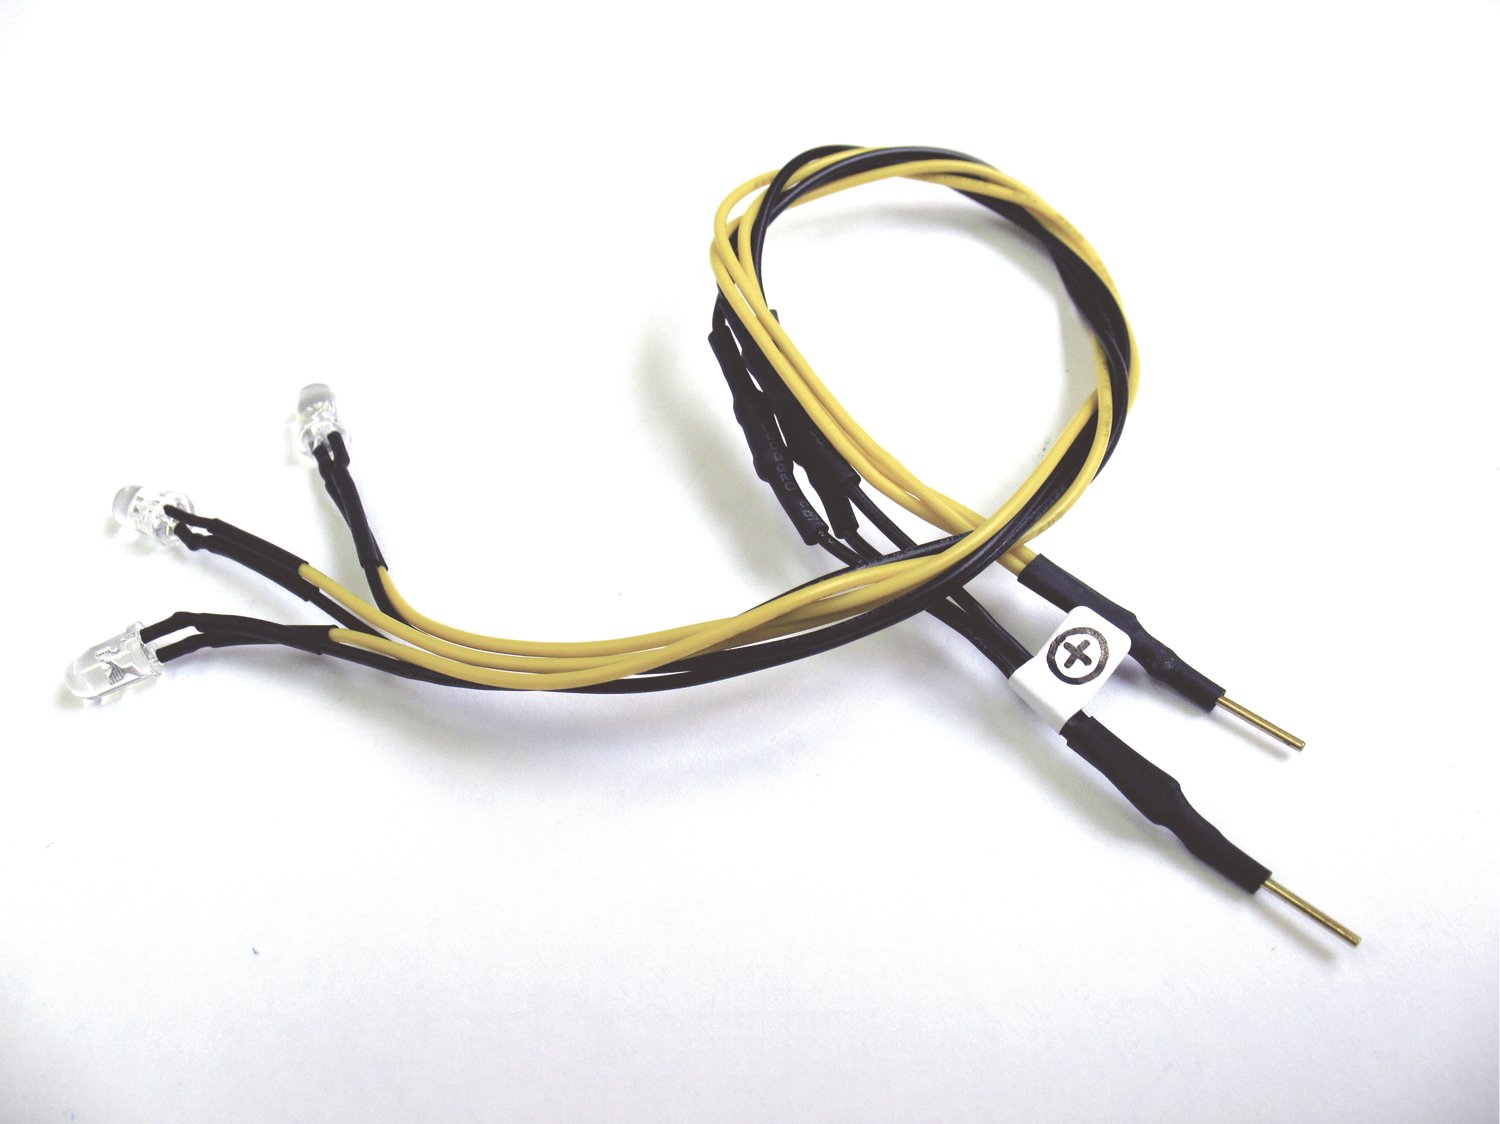 Dioden-Set + Kabel BR 218 - G LED Lampenset für BR 218 / Taurus